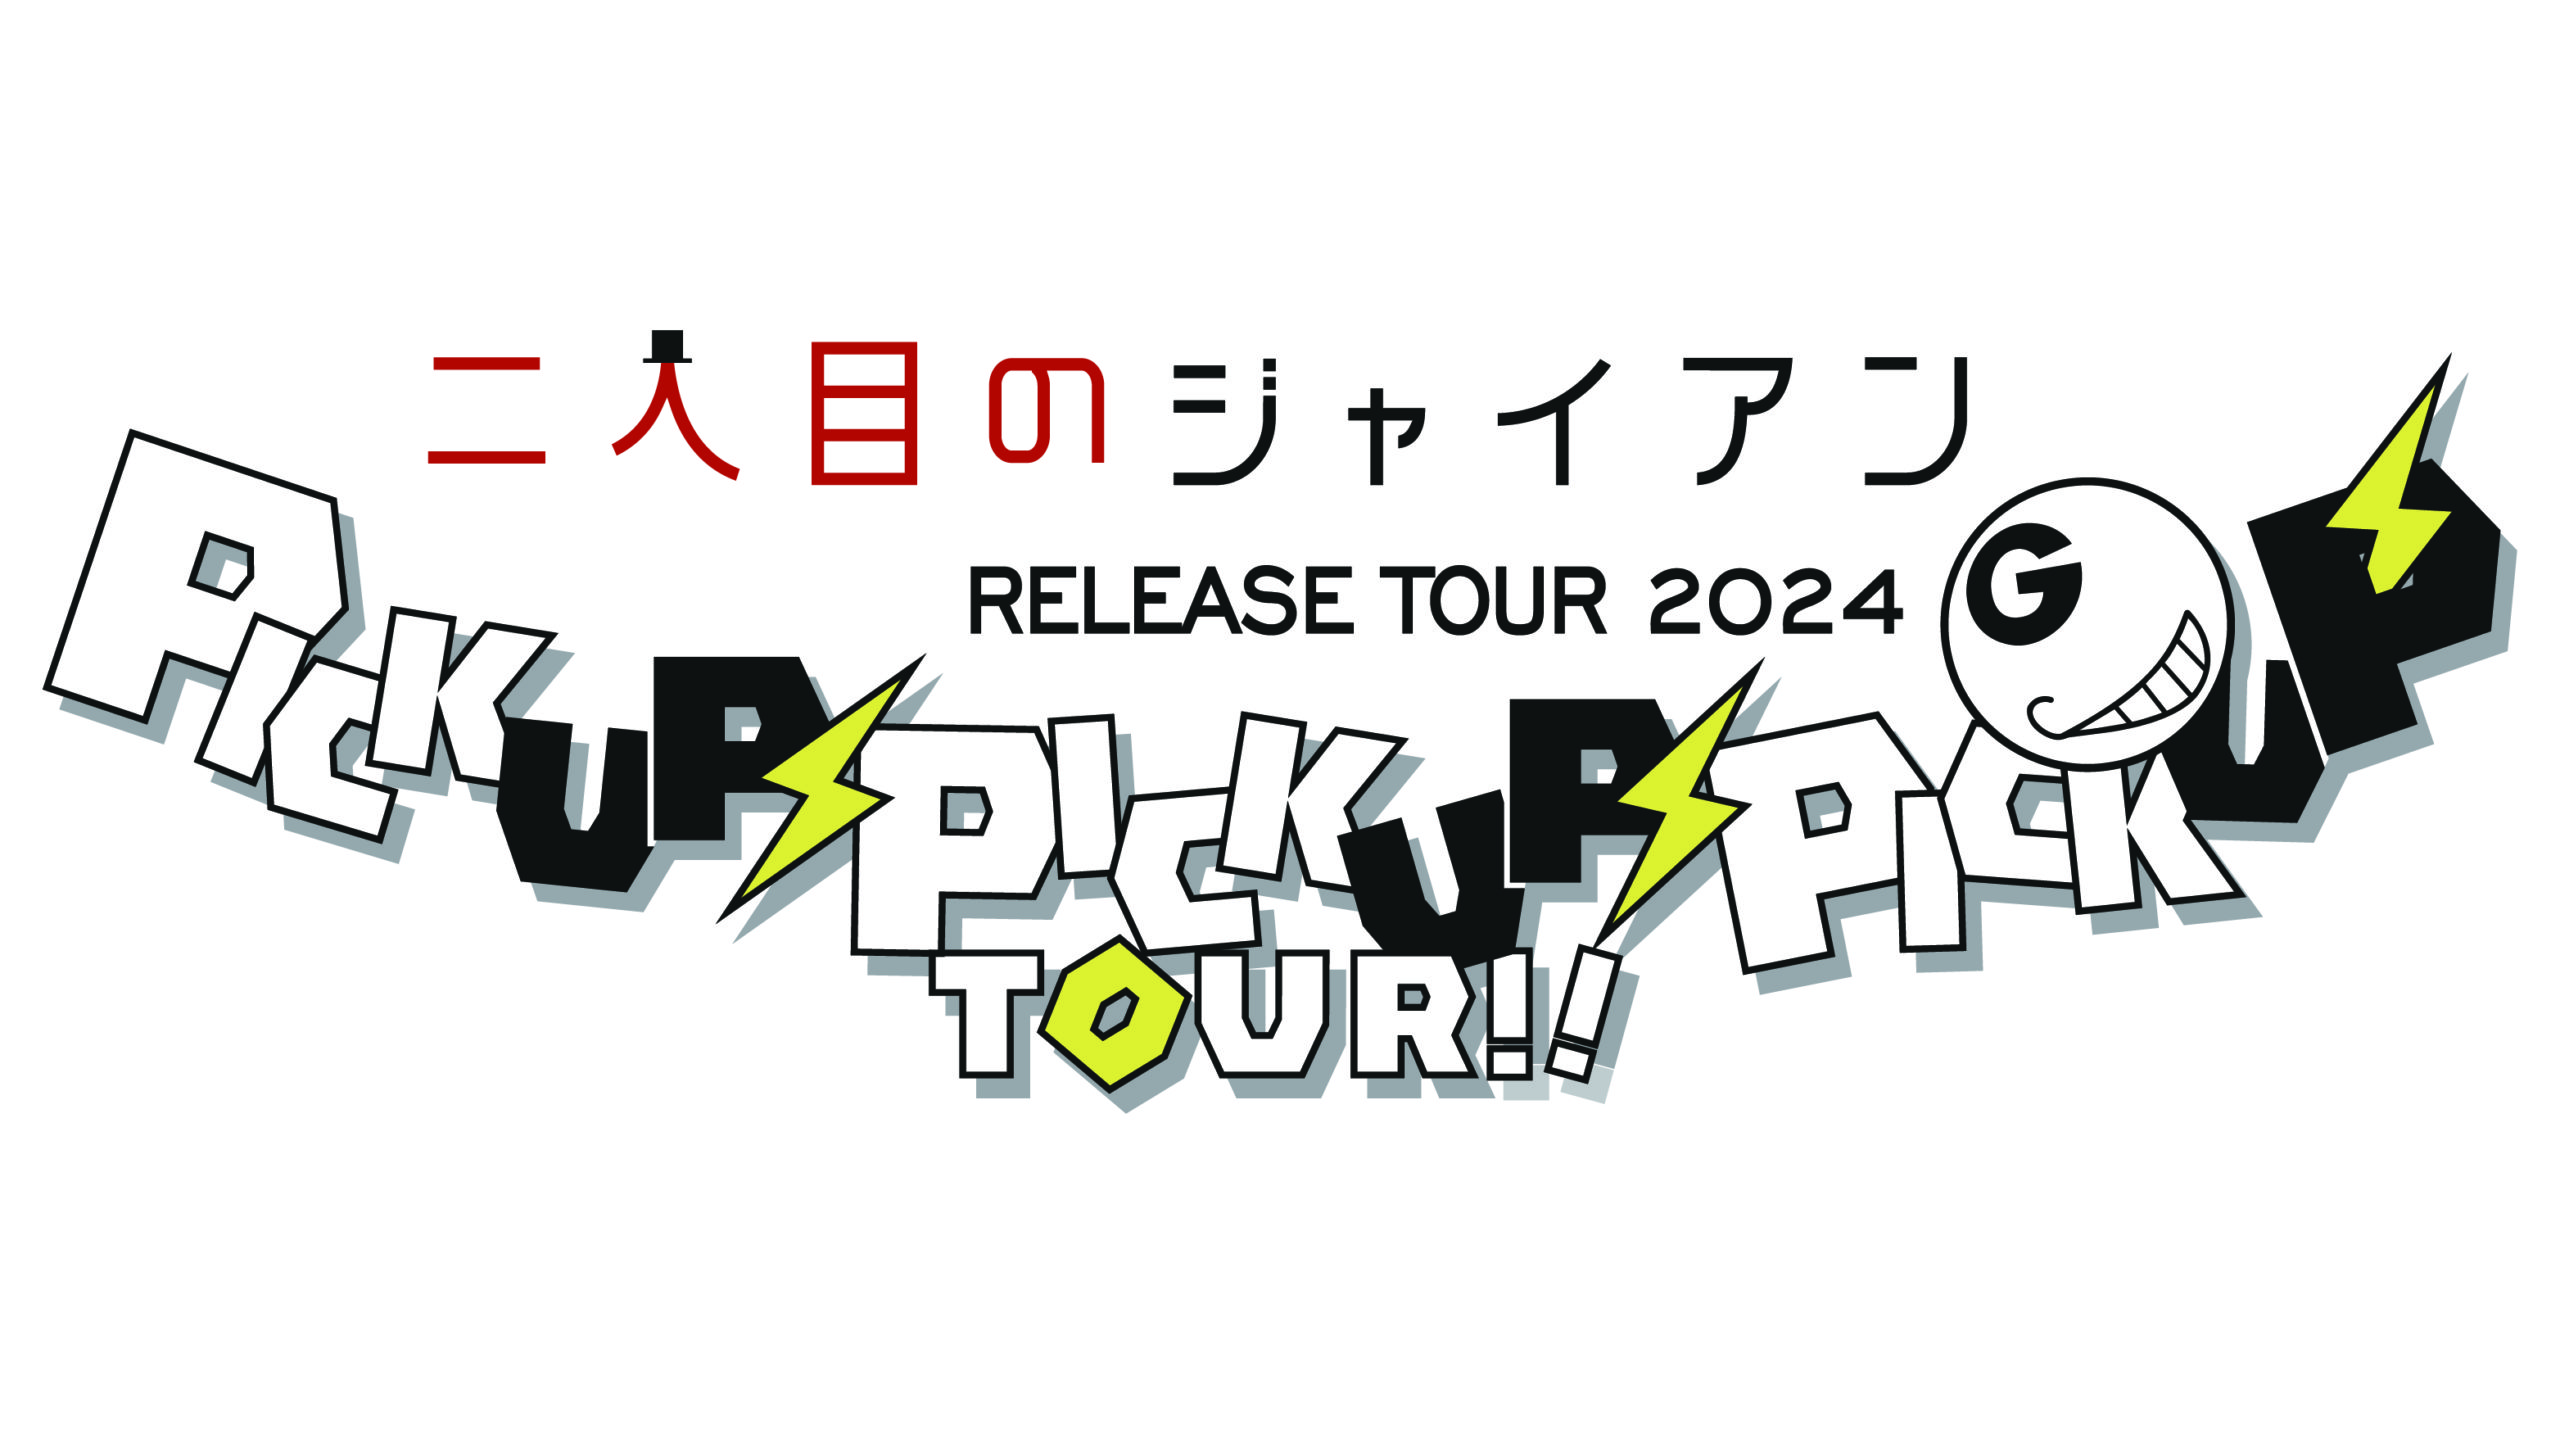 二人目のジャイアン 「ピカピカ」RELEASE TOUR 2024